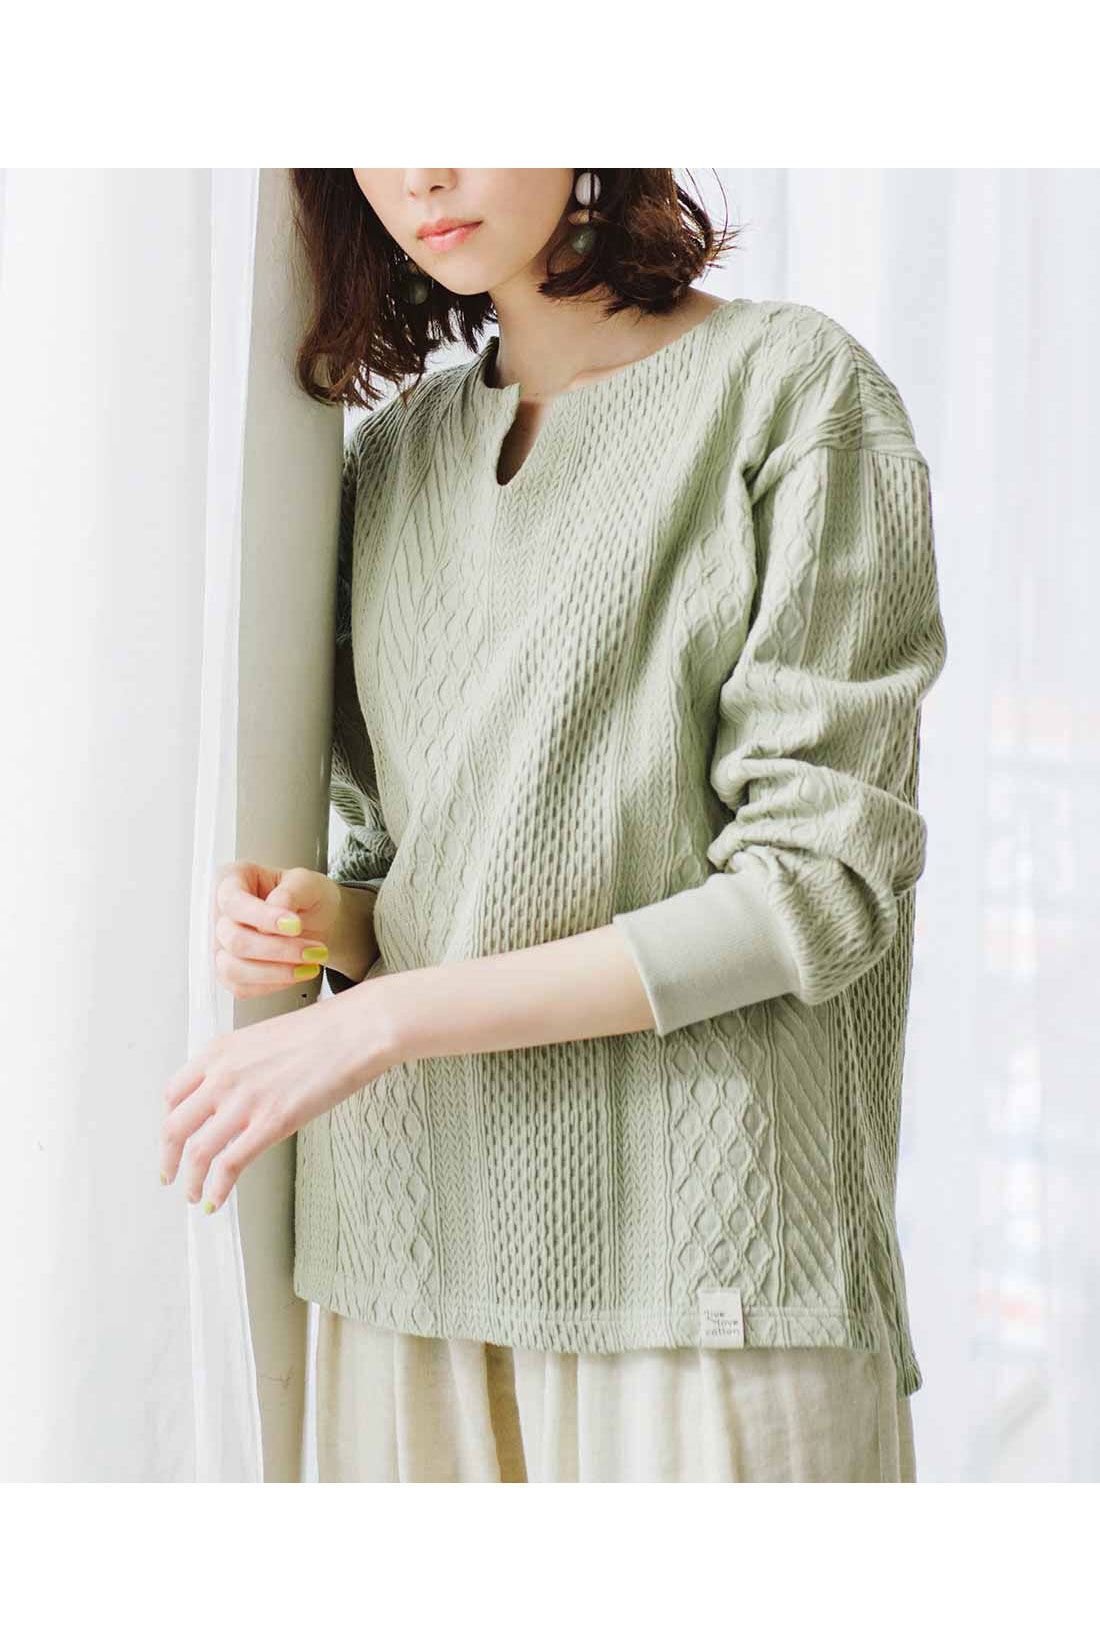 Live in  comfort|Live love cottonプロジェクト　リブ イン コンフォート　編み柄が素敵な袖口リブオーガニックコットントップス〈ミント〉|※着用イメージです。お届けするカラーとは異なります。